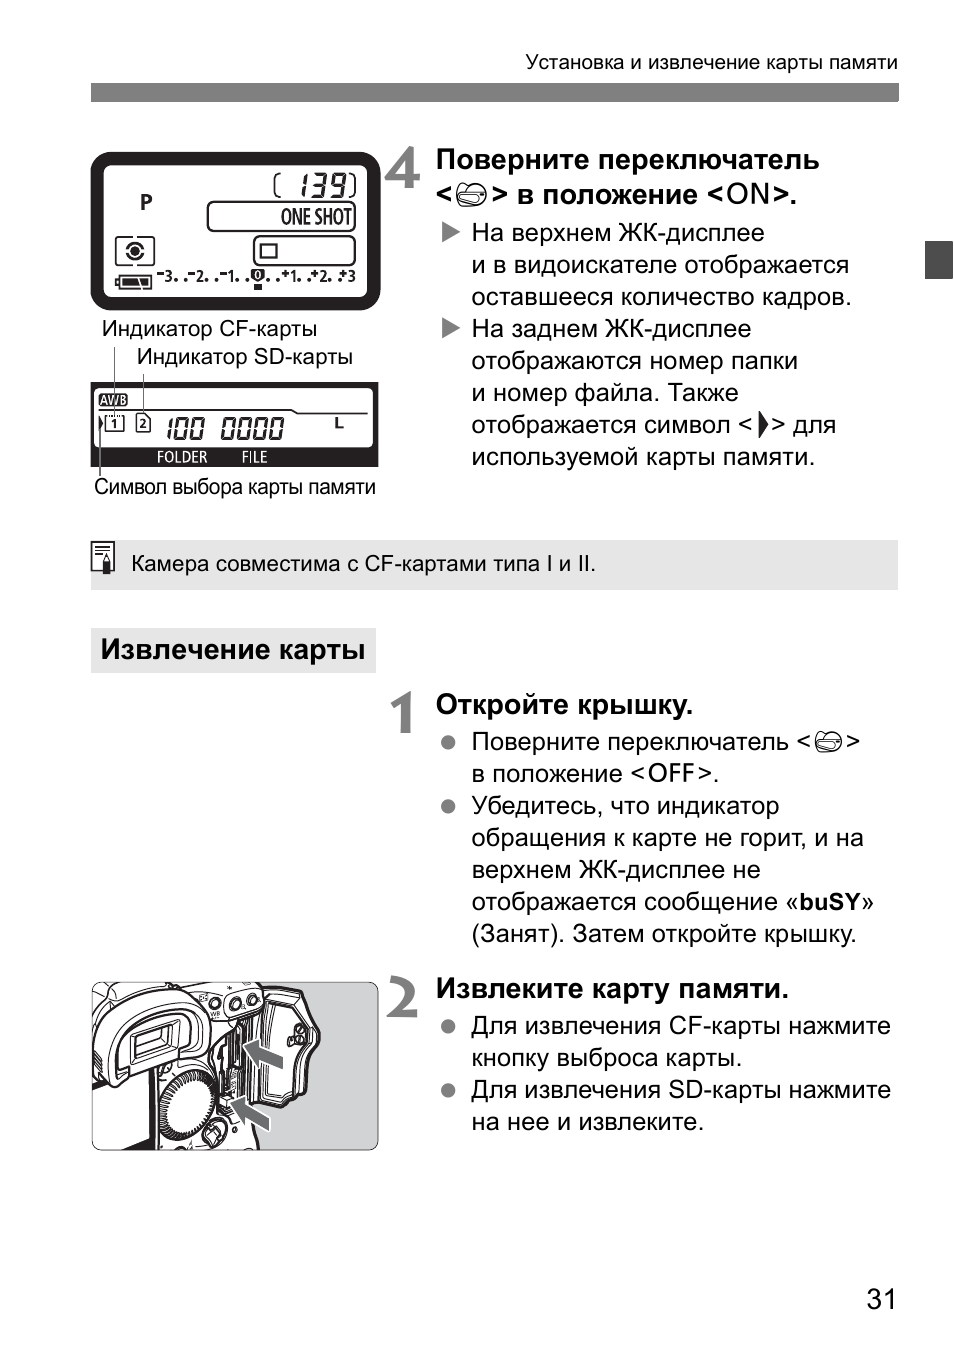 Инструкция по эксплуатации Canon EOS 1D Mark II N | Страница 31 / 196